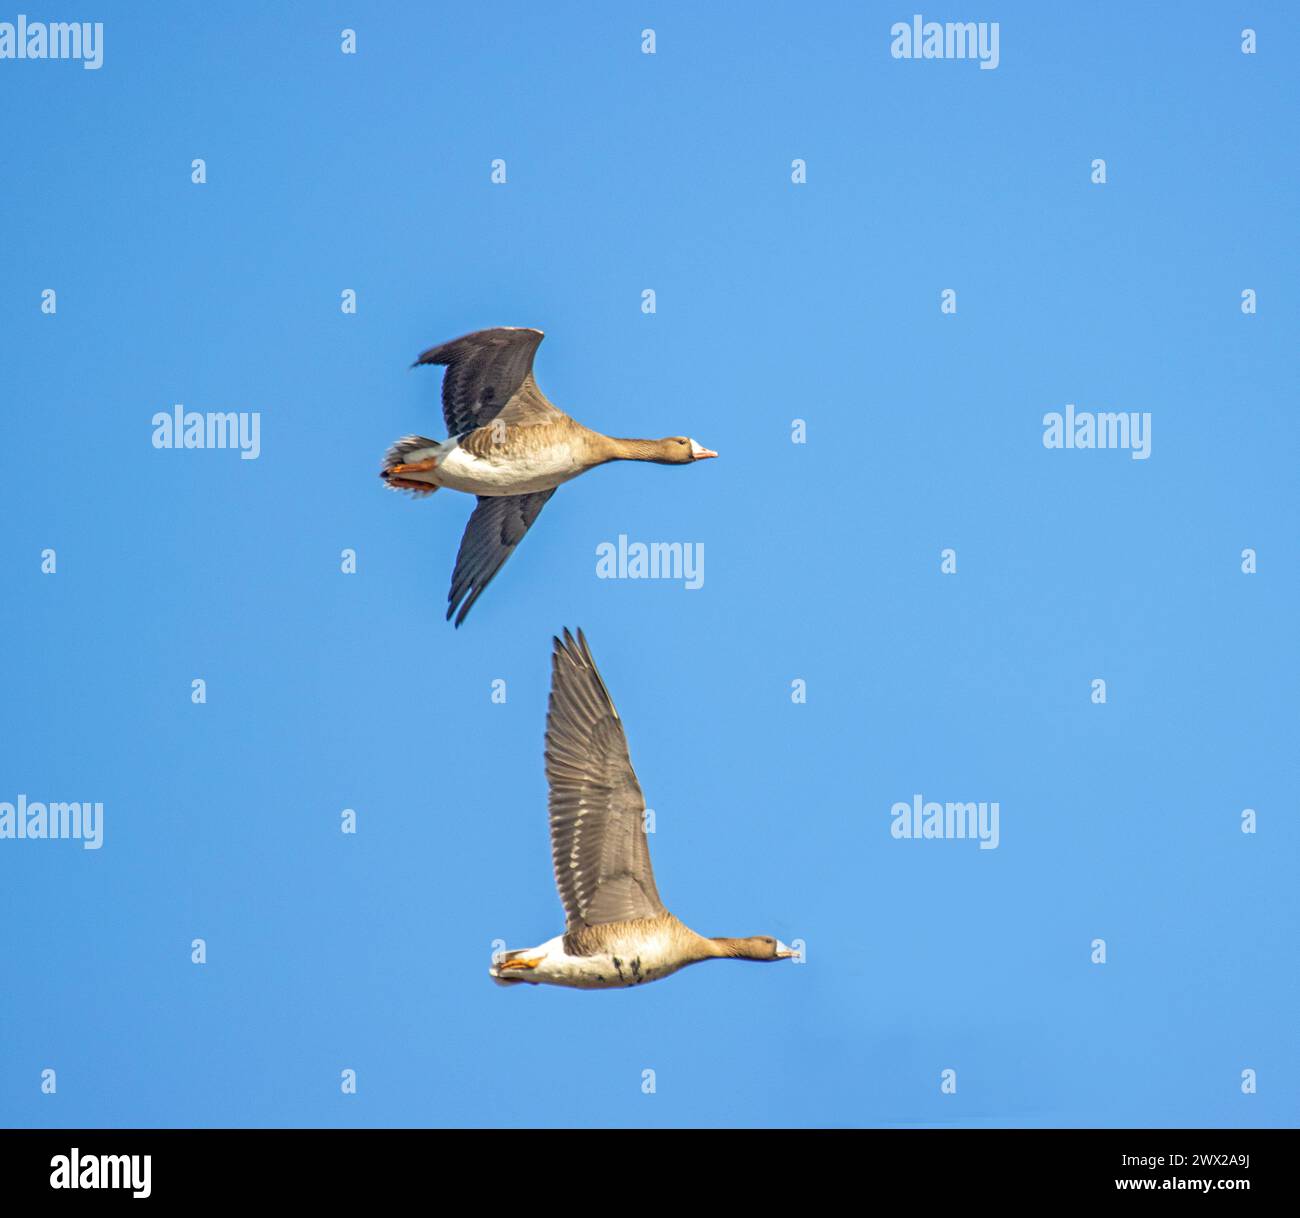 Ein paar Weißfrontgans (Anser albifrons), wandernde Gänse am Himmel. Europäische Migrationsstopps, Vögel fliegen mit Vollgesicht, rasend Stockfoto